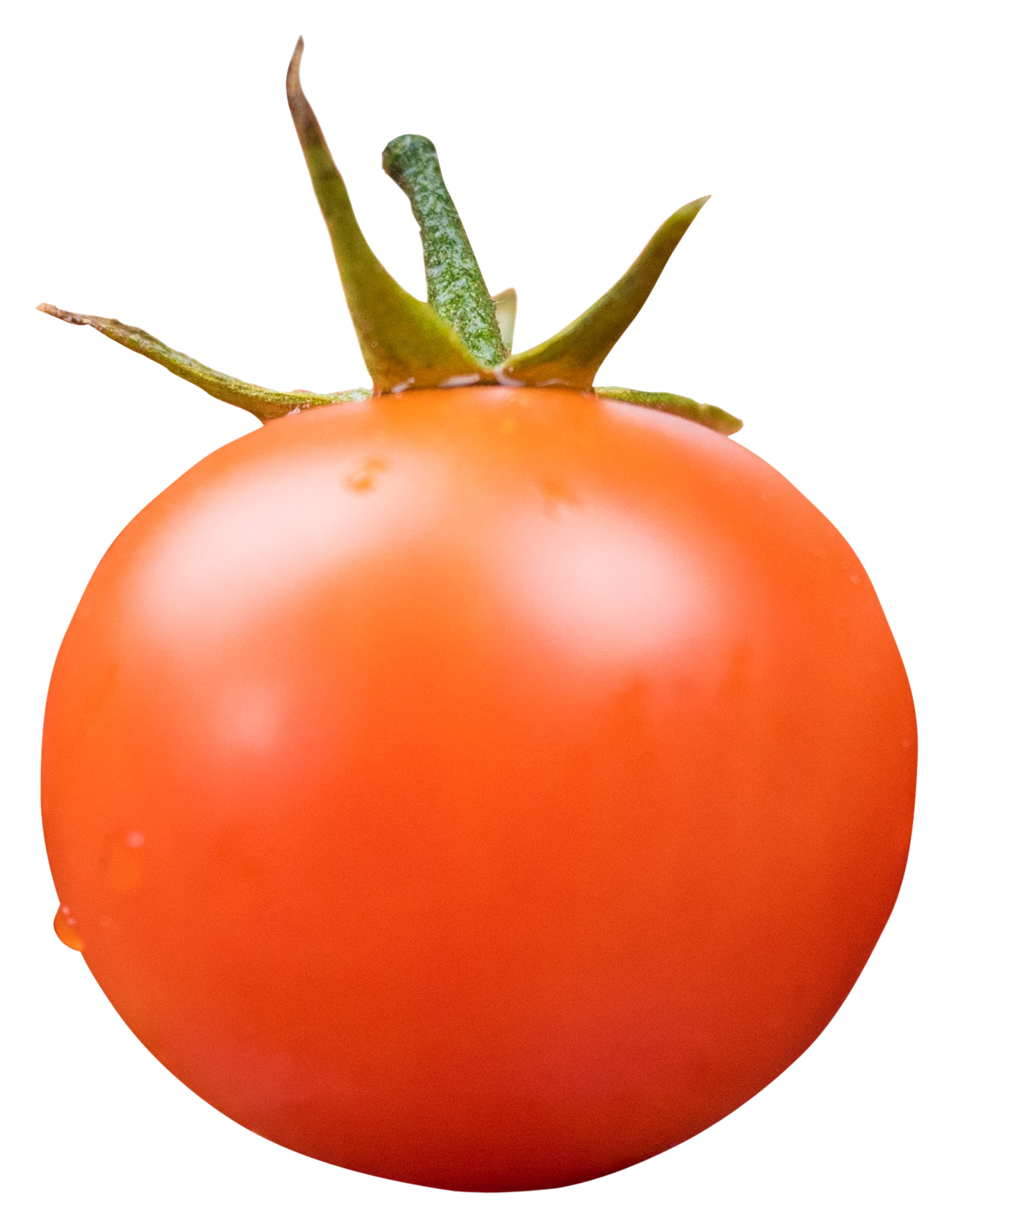 tomato, tomato png, tomato png image, tomato transparent png image, tomato png full hd images download